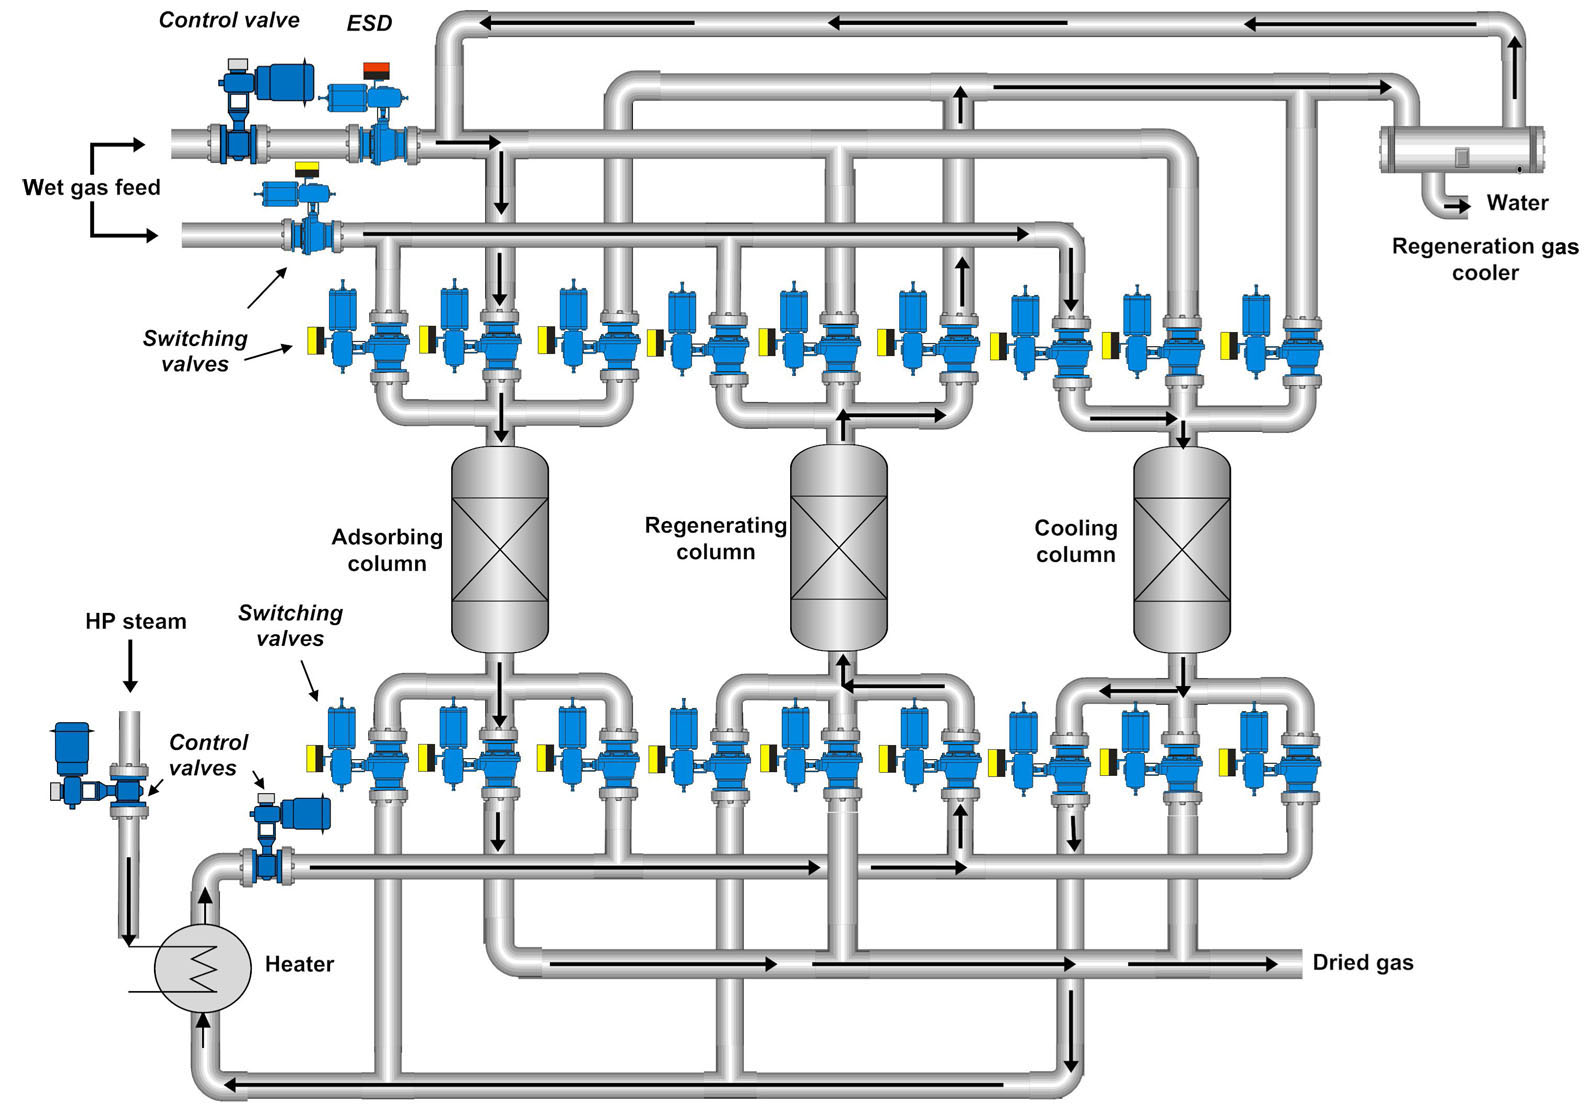 典型的分子筛选过程。(这个图只是一个可视化表示,而不是一个实际的工艺流程图)。